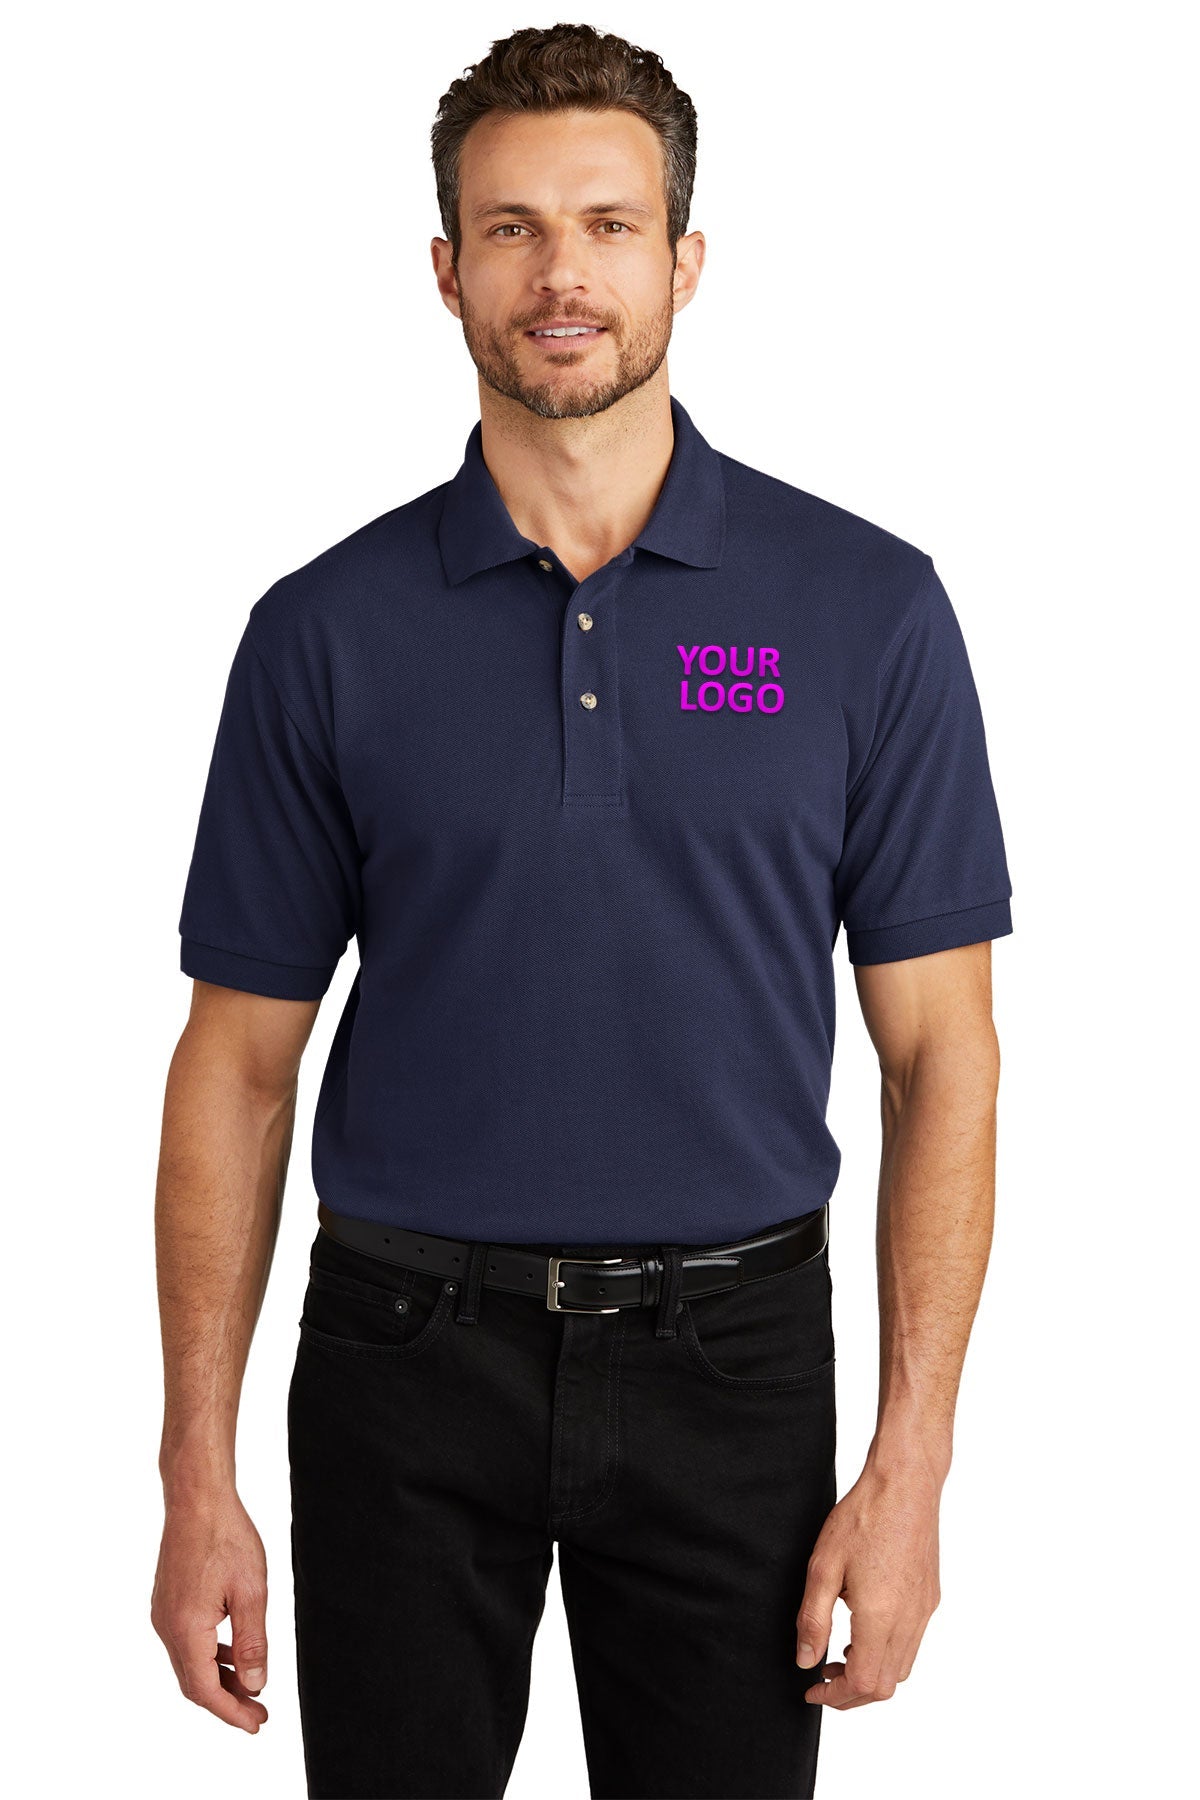 port authority navy k420 polo shirts with company logo